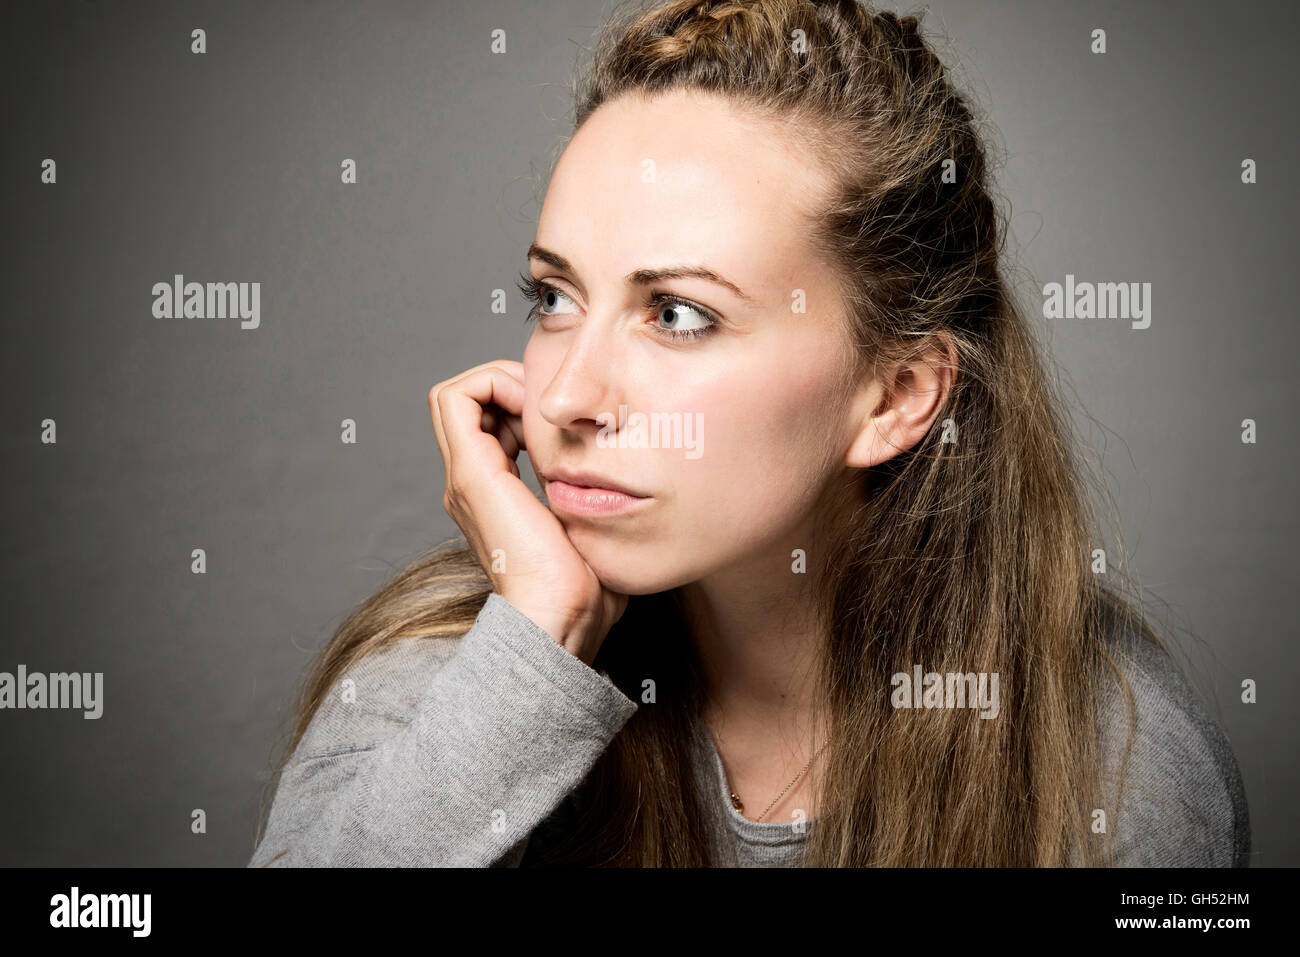 Junge Frau sucht traurig, traurig, nachdenklich Hand am Kinn auf den Abstand Nahaufnahme Stockfoto